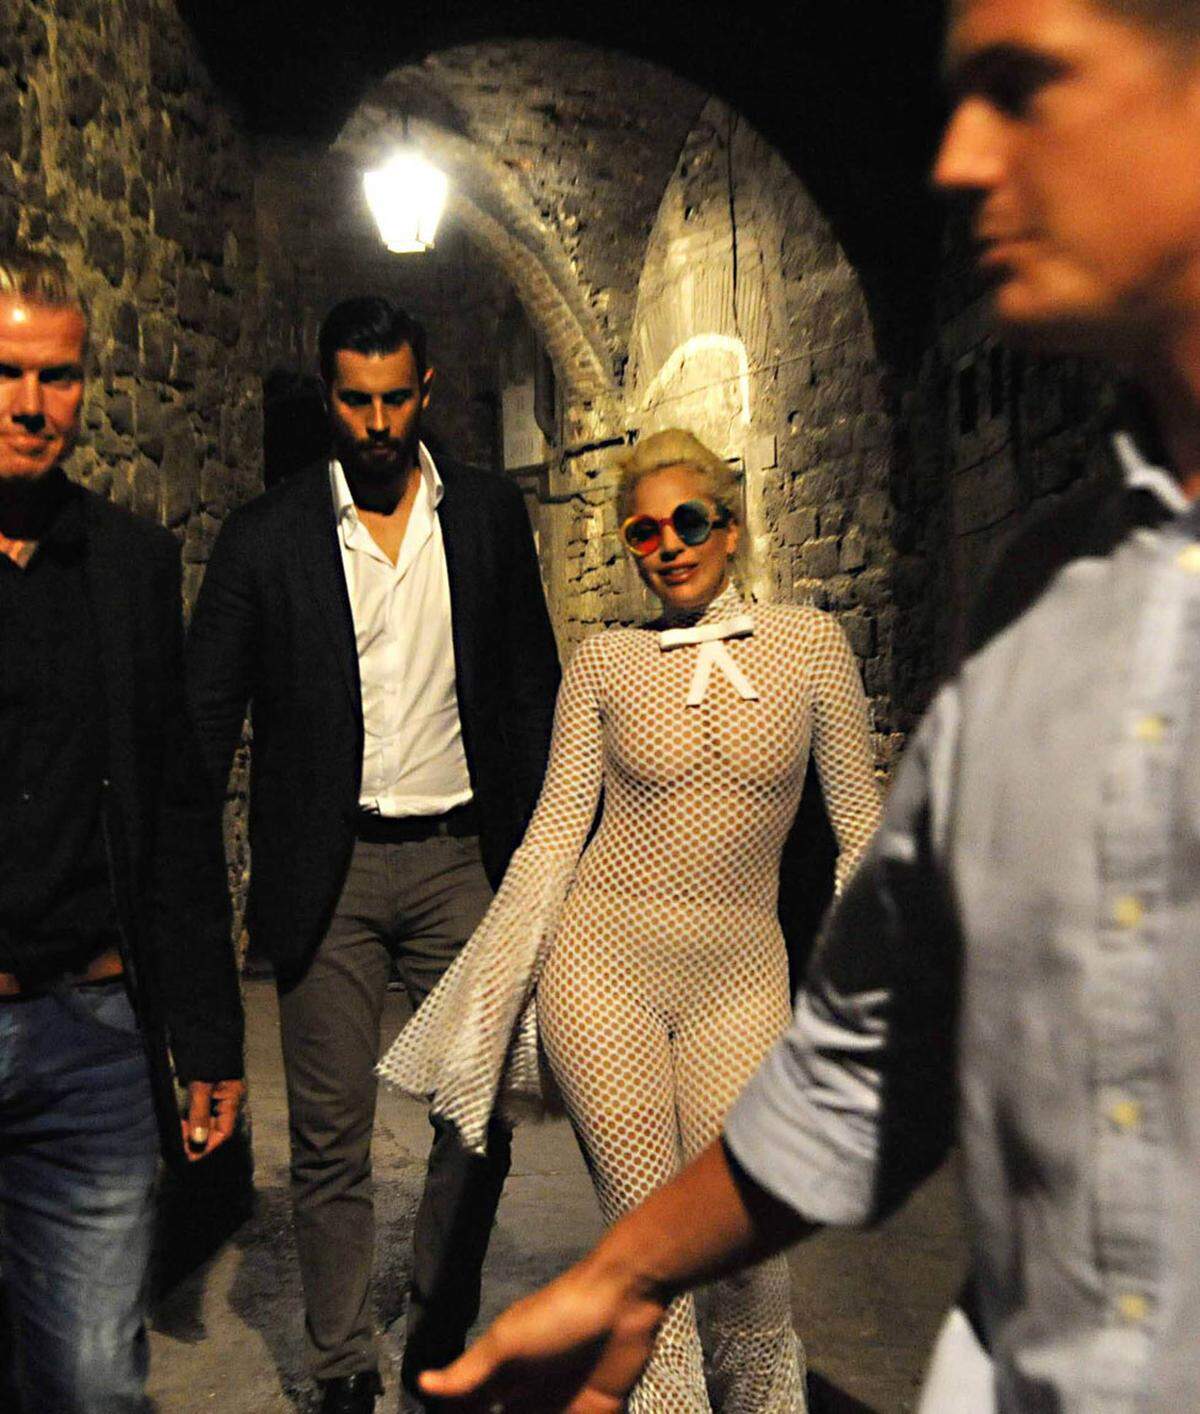 Ein Outfit in Netzoptik mit Trompetenärmeln kann nicht einmal Lady Gaga tragen.